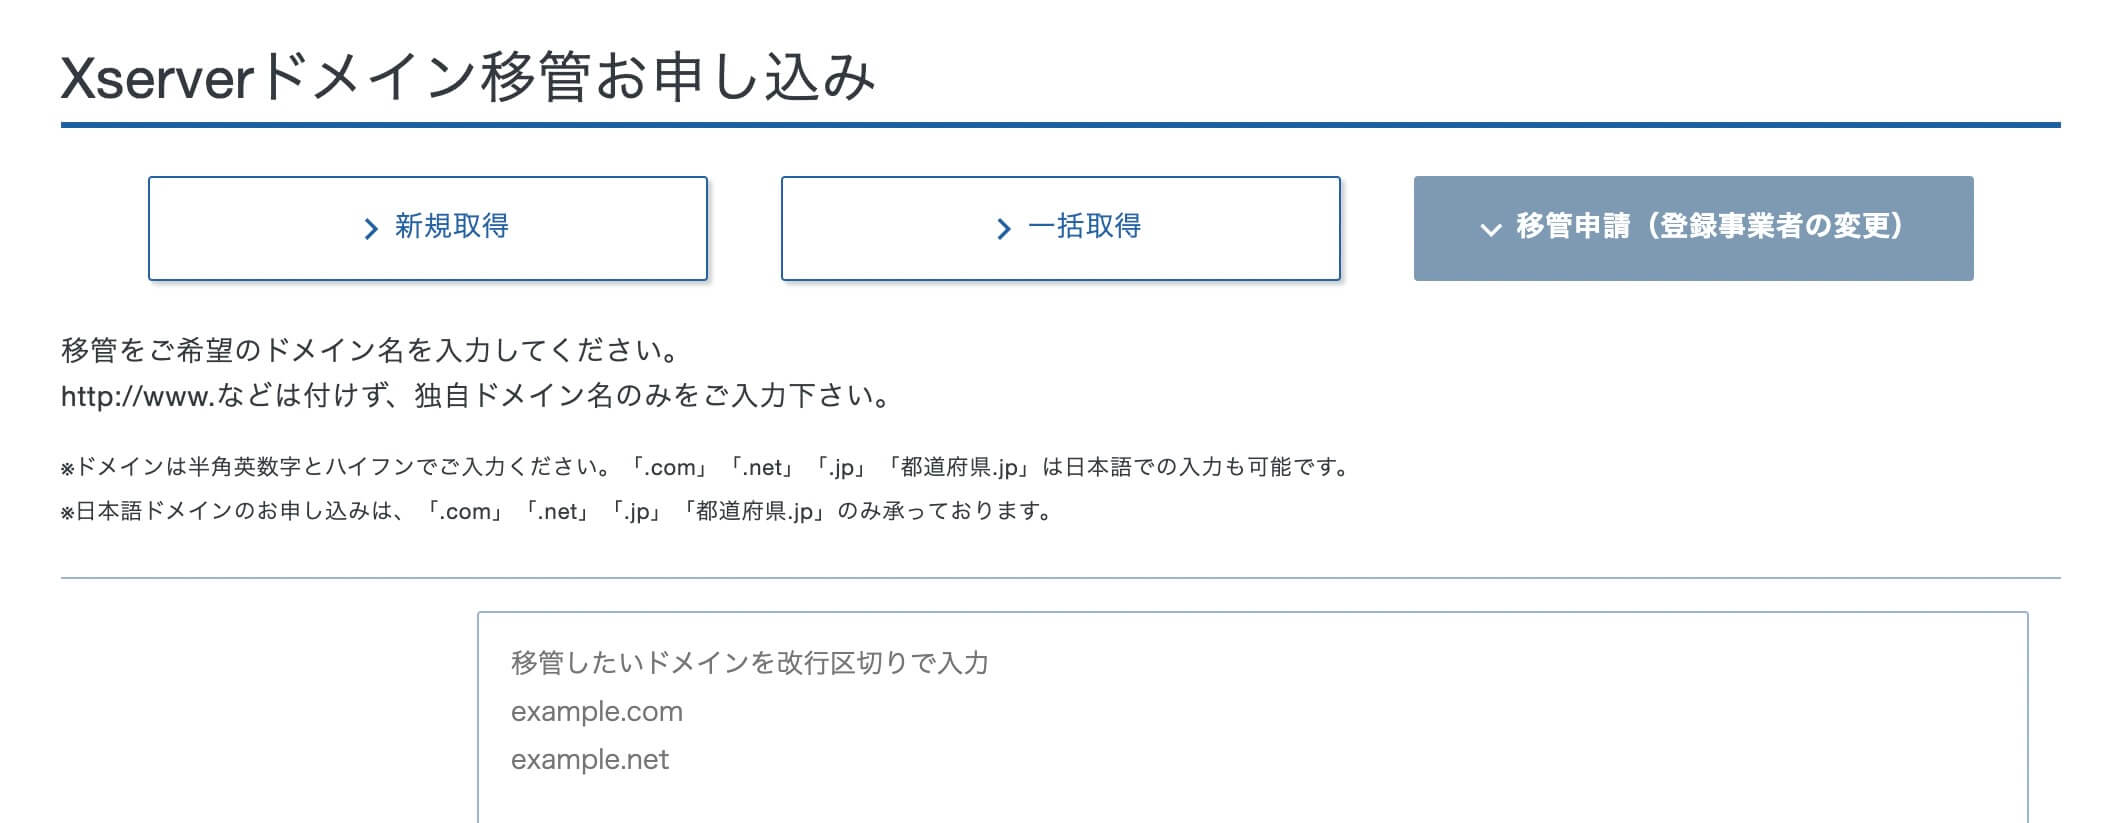 Xserverドメイン移管お申し込み
＞新規取得
＞一括取得
＞移管申請（登録事業者の変更）

移管をご希望のドメイン名を入力してください。
http://www.などは付けず、独自ドメイン名のみをご入力下さい。
※ドメインは半角英数字とハイフンでご入力ください。「.com」「.net」「.jp」「都道府県.jp」は日本語での入力も可能です。
※日本語ドメインのお申し込みは、「.com」「.net」「.jp」「都道府県.jp」のみ承っております。

移管したいドメインを改行区切りで入力
example.com
example.net